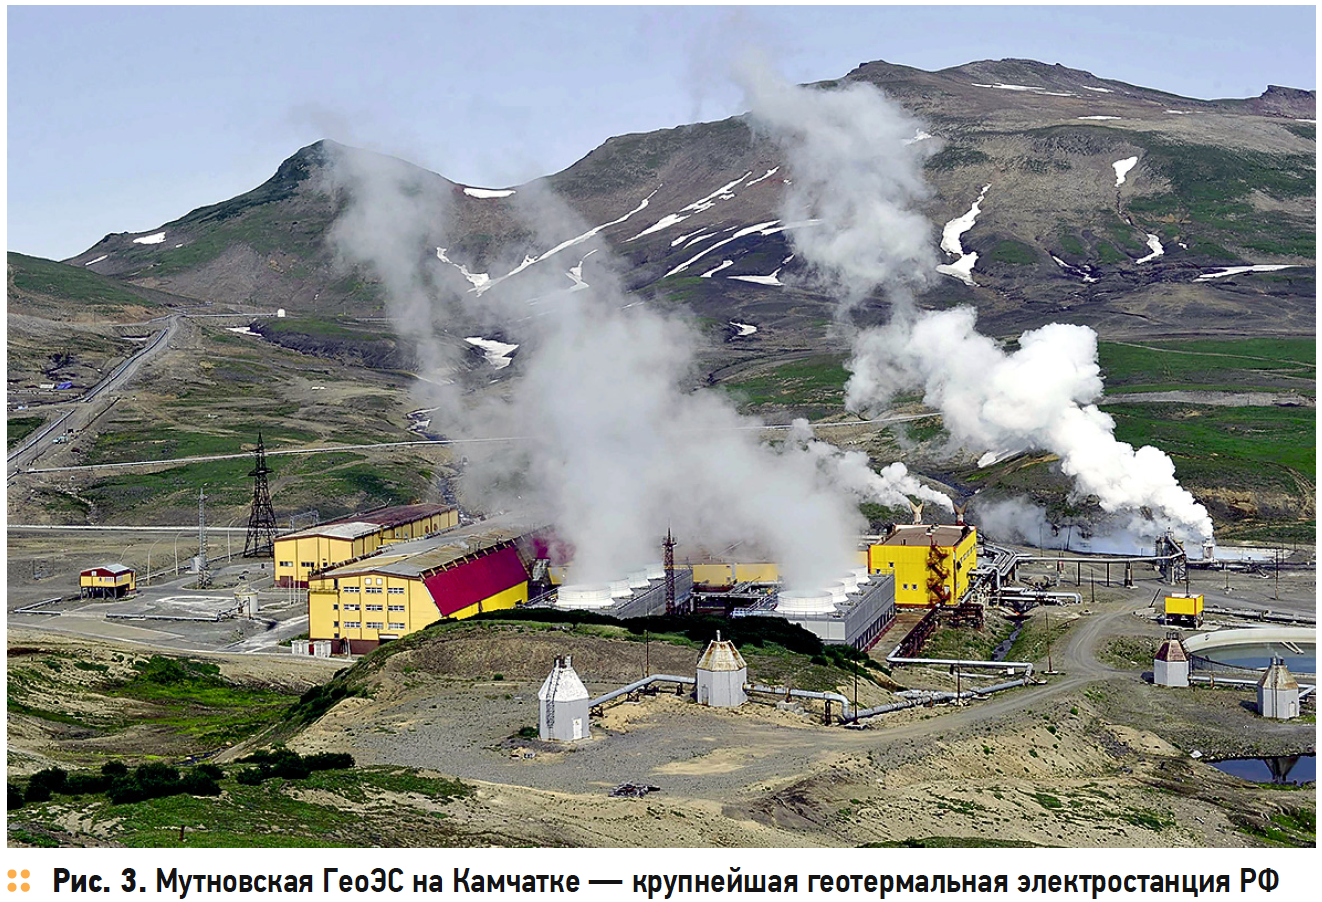 Мутновская ГеоЭС на Камчатке — крупнейшая геотермальная электростанция РФ